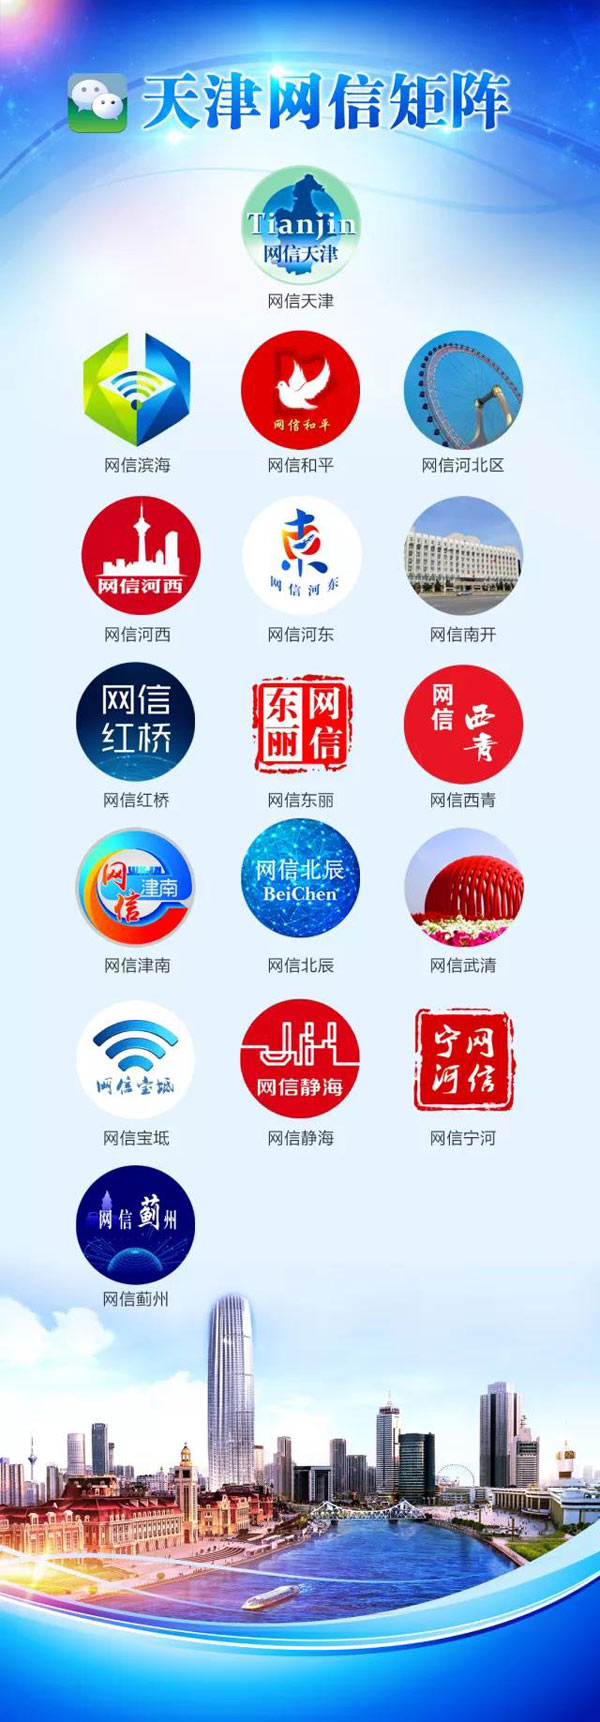 天津网信系统政务新媒体矩阵上线运行